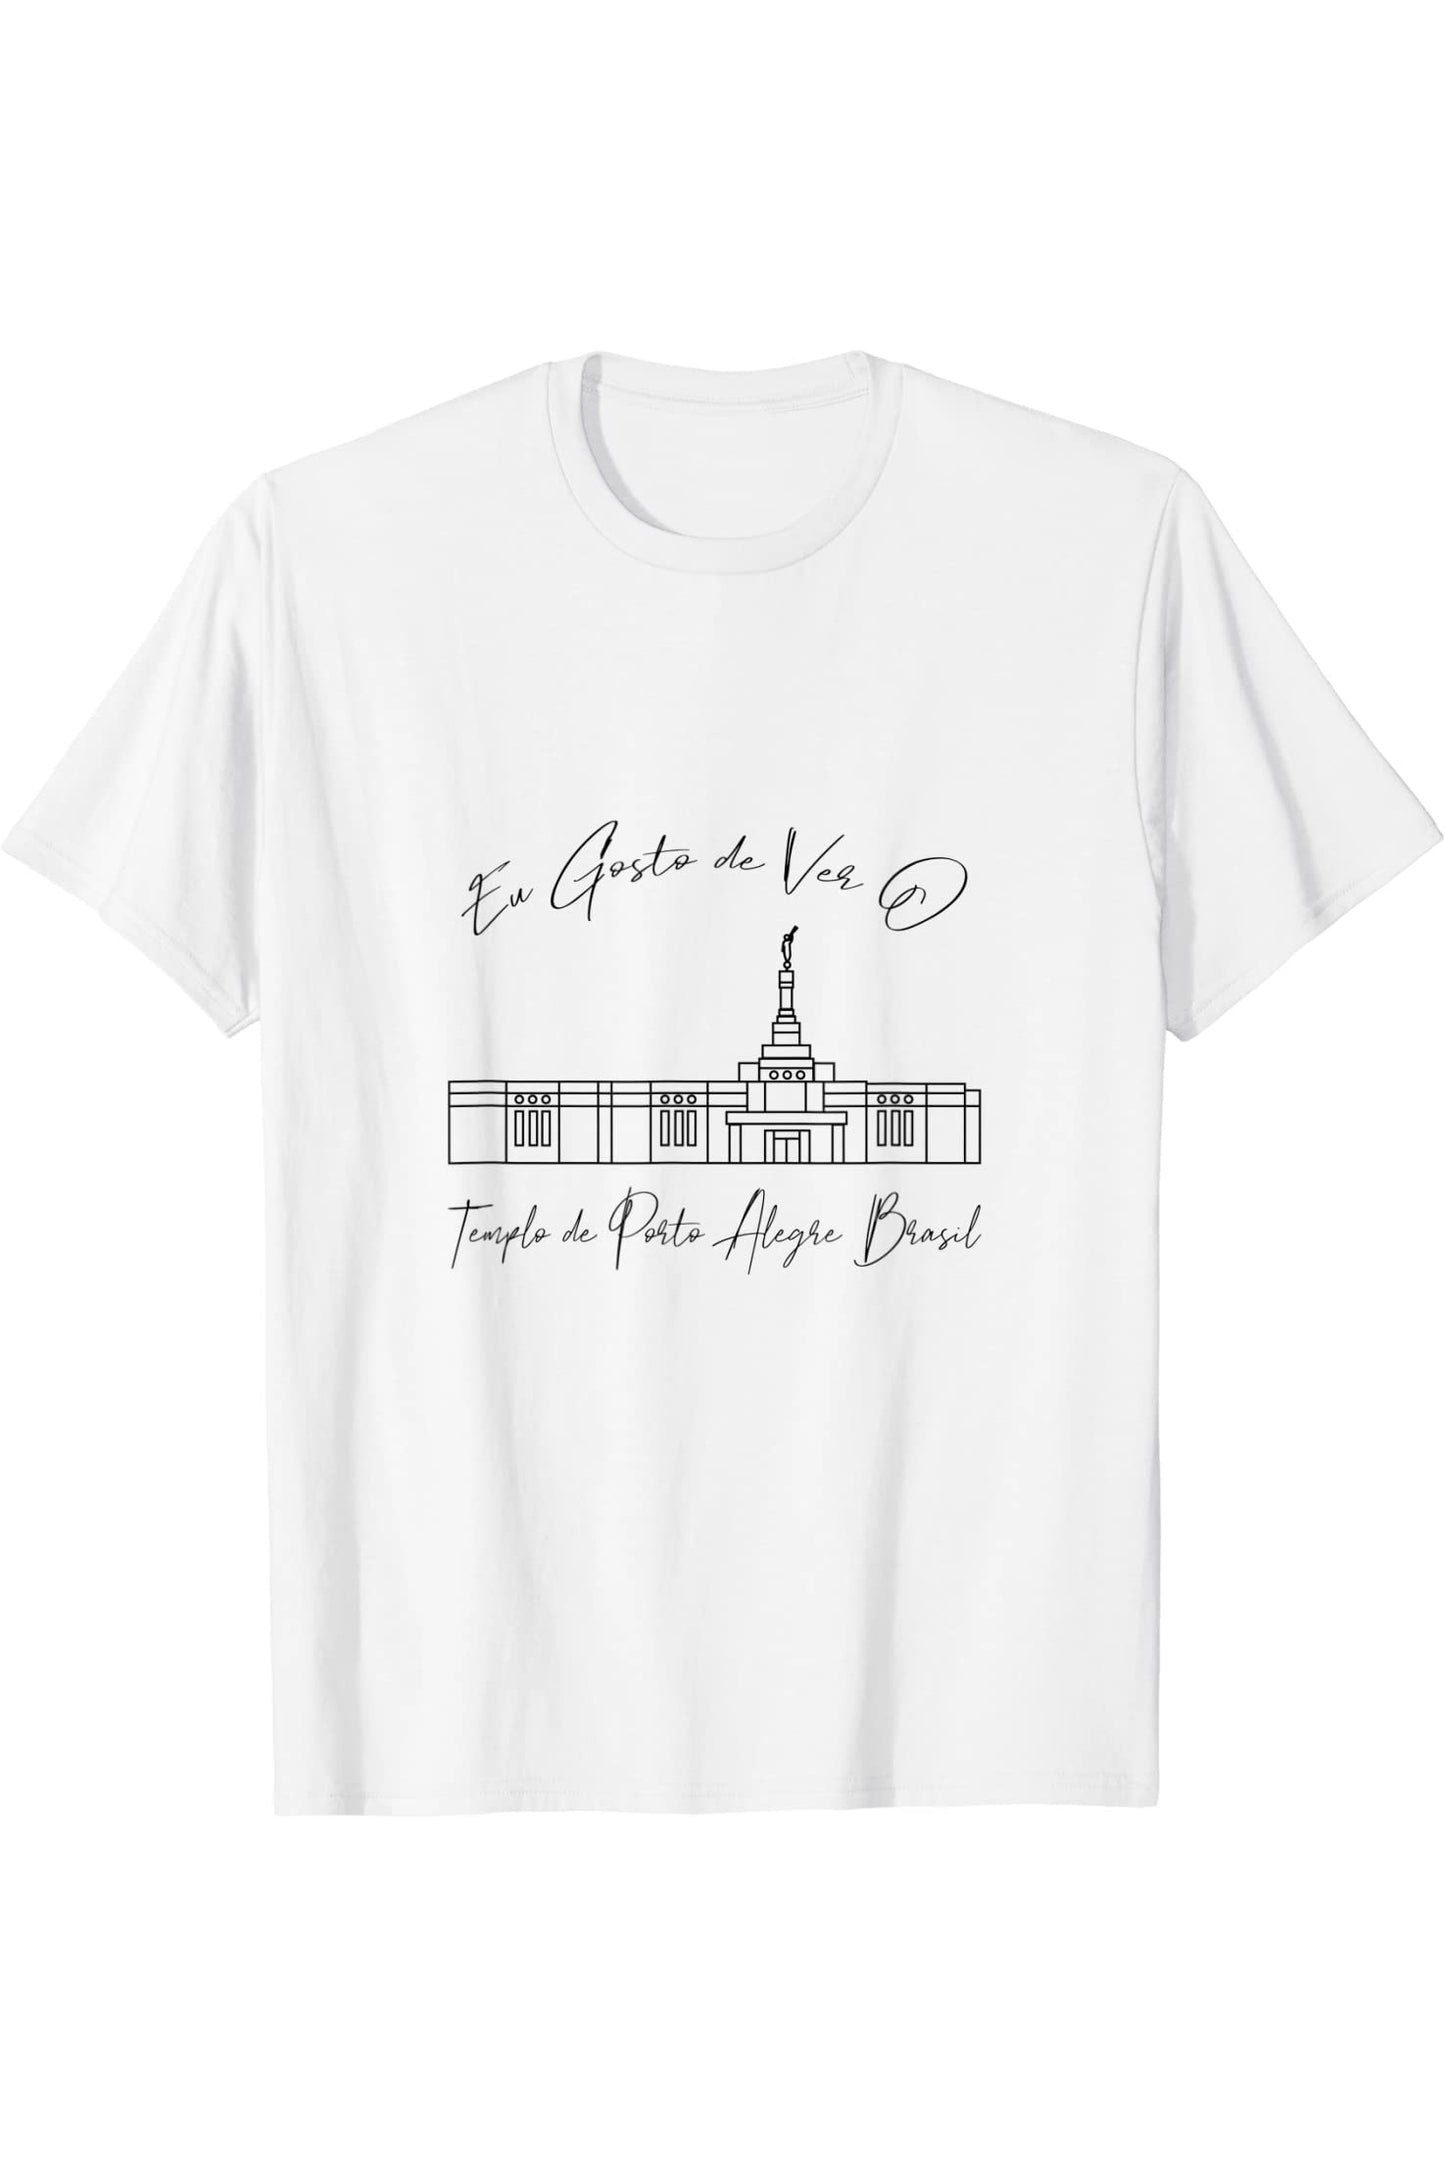 Porto Alegre Brazil Temple T-Shirt - Calligraphy Style (Portuguese) US